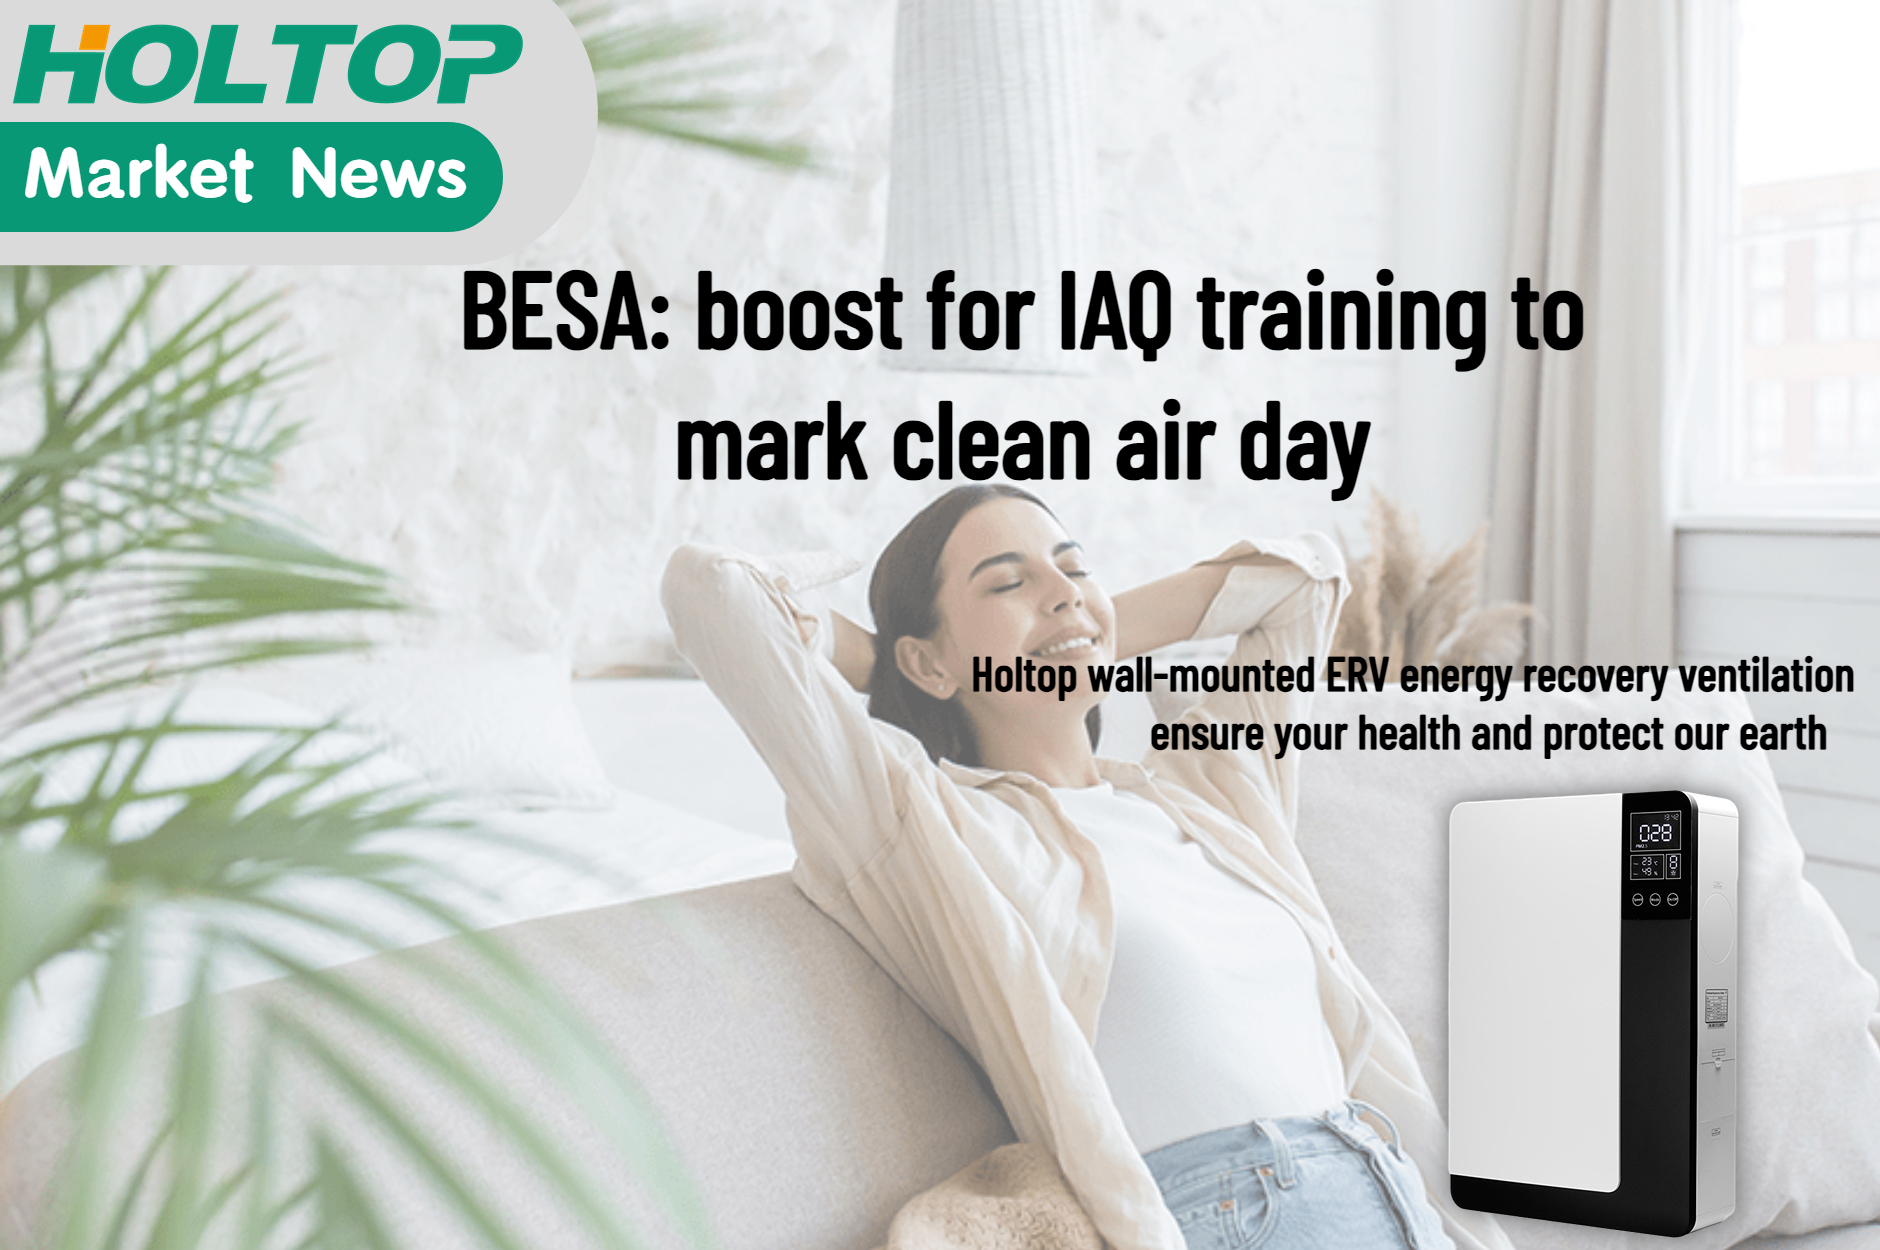 BESA impulsa la formación en IAQ con motivo del día del aire limpio